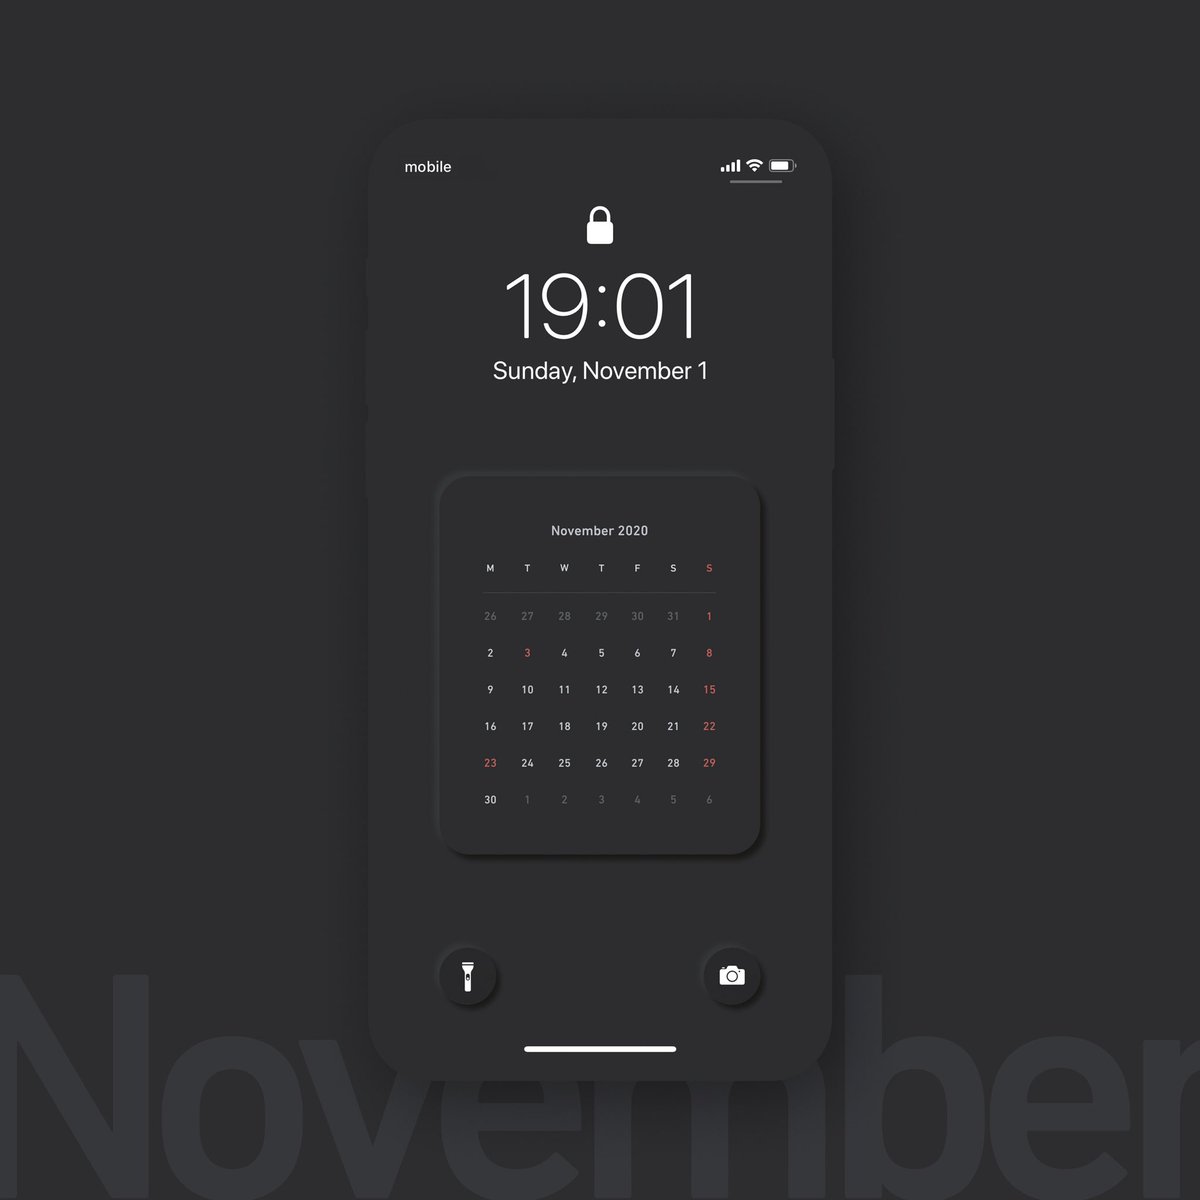 フジタユウト ユトログ בטוויטר 年11月版 ミニマルカレンダー お待たせいたしました 年11月版のミニマルなiphone用ロック画面壁紙を作りました ミニマル シンプル好きは是非 良かったらシェアしていただけると嬉しいです Iphone12シリーズへの